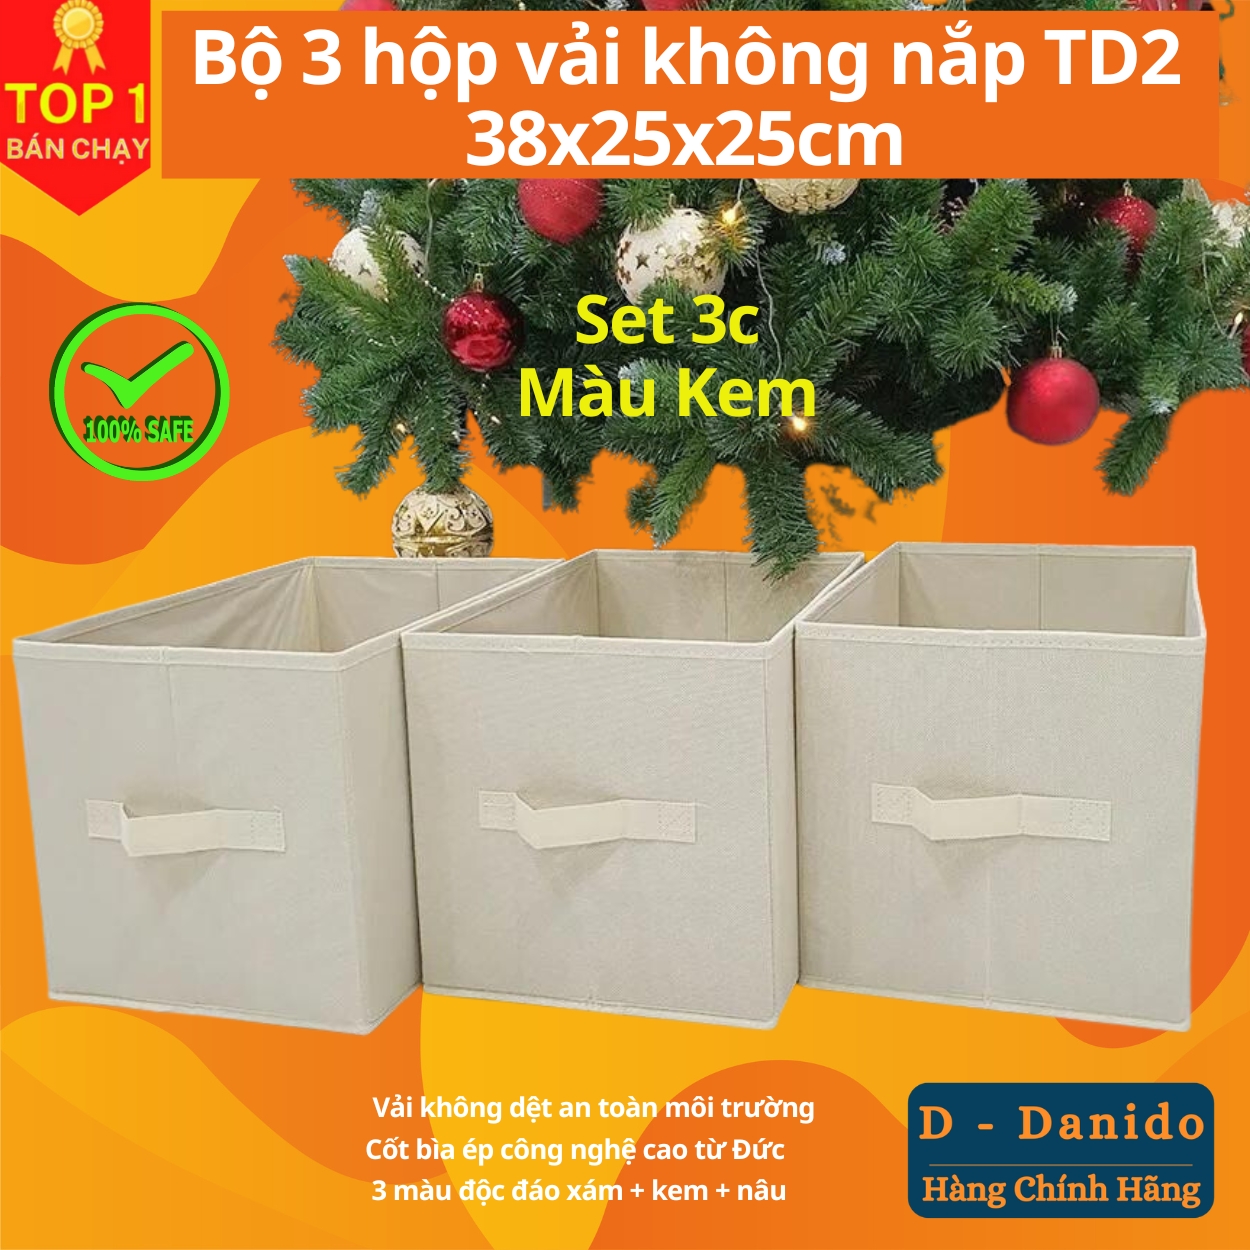 Combo 3 hộp vải đựng đồ đa năng TD2 – Bộ 3 túi vải Thụy Điển không nắp tiết kiệm sang trọng dung tích 24L mỗi hộp - chính hãng miDoctor